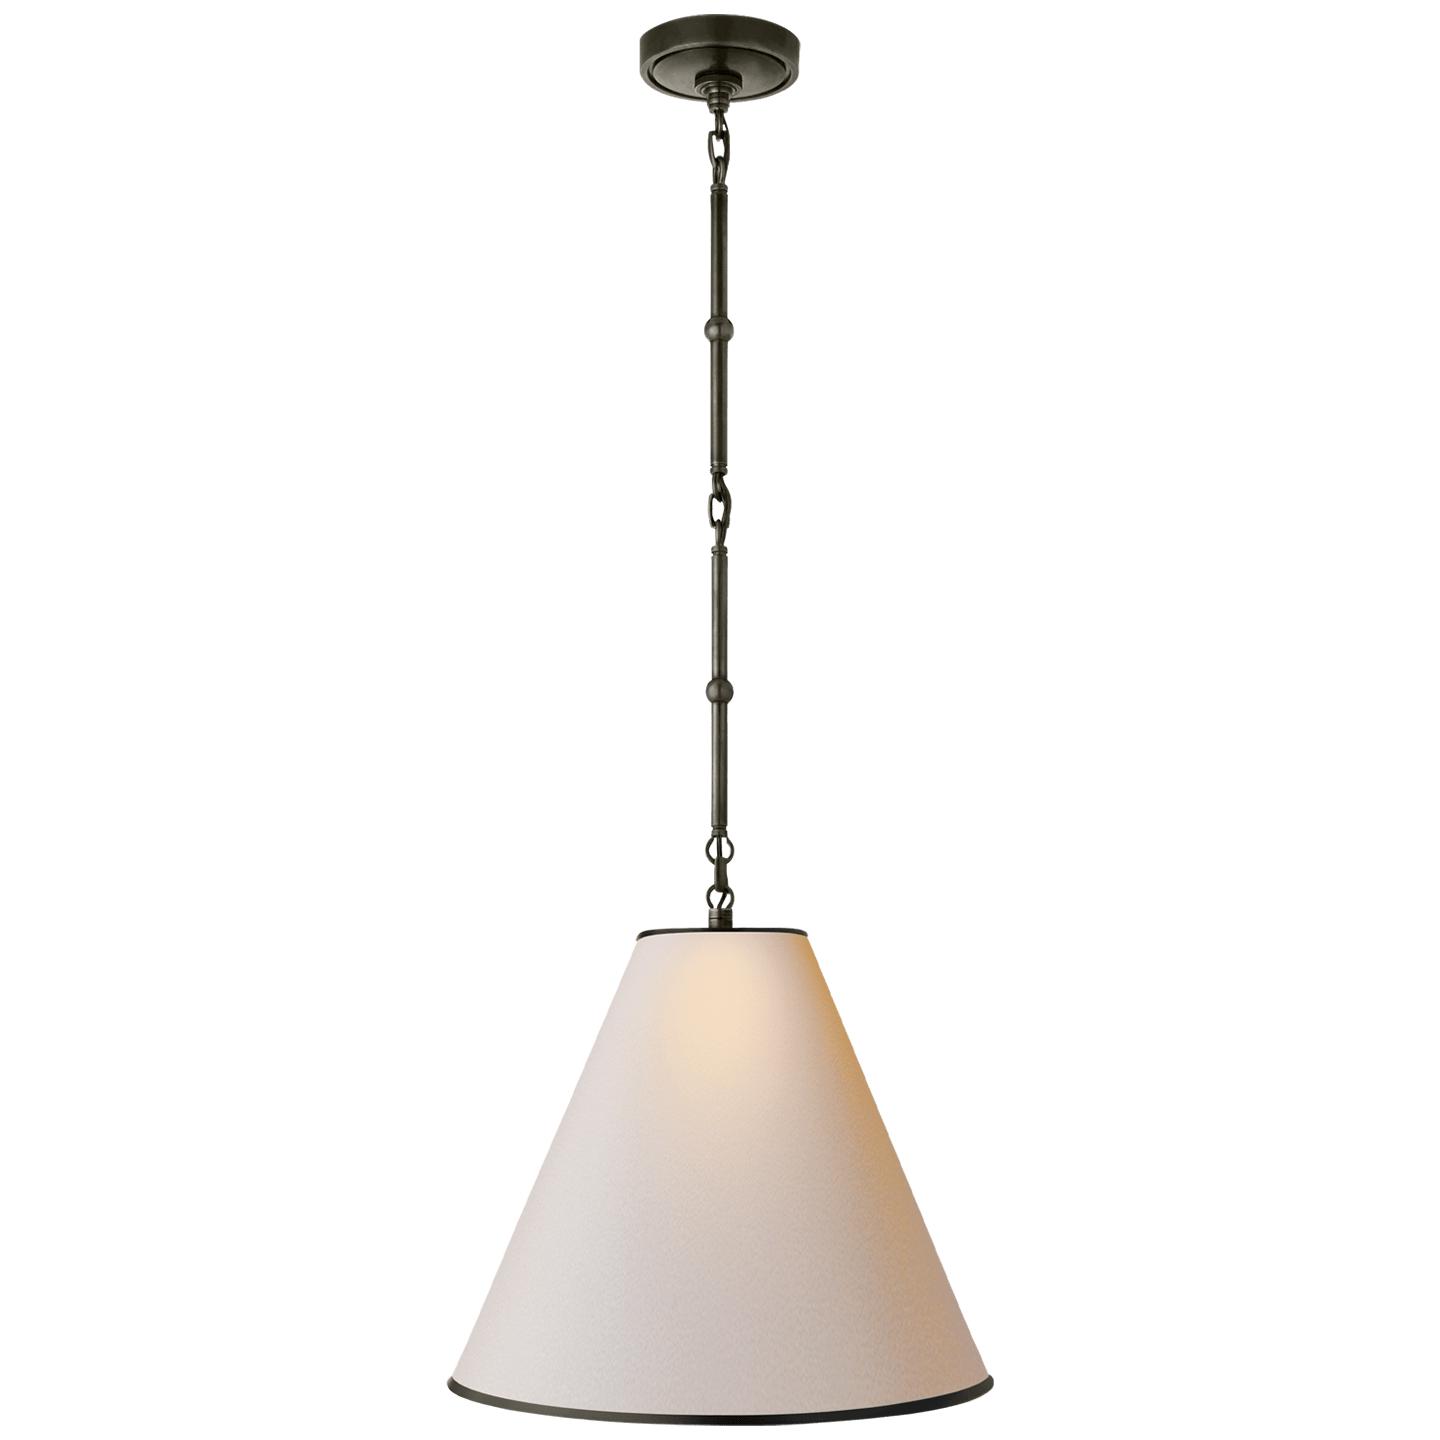 Купить Подвесной светильник Goodman Small Hanging Light в интернет-магазине roooms.ru